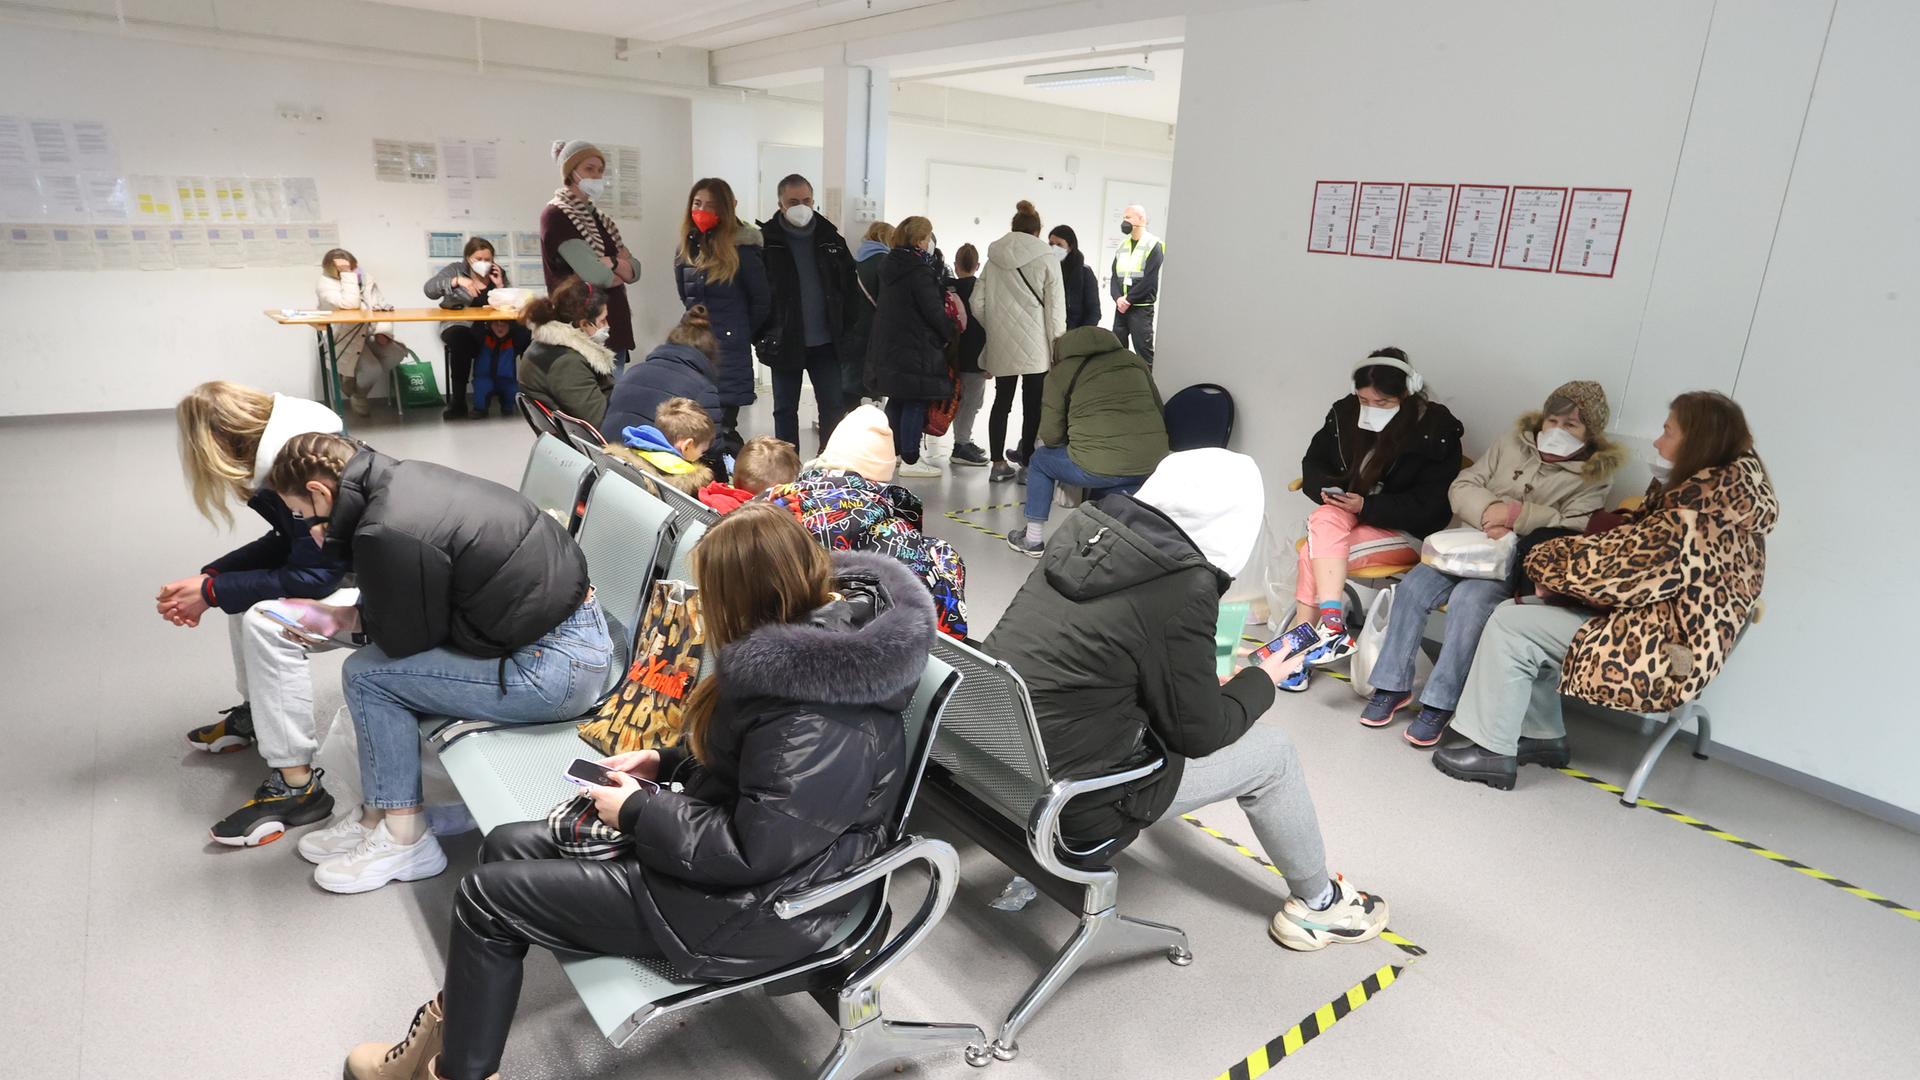 Flüchtlingen im Wartebereich für die Registrierung im Ankerzentrum Augsburg.